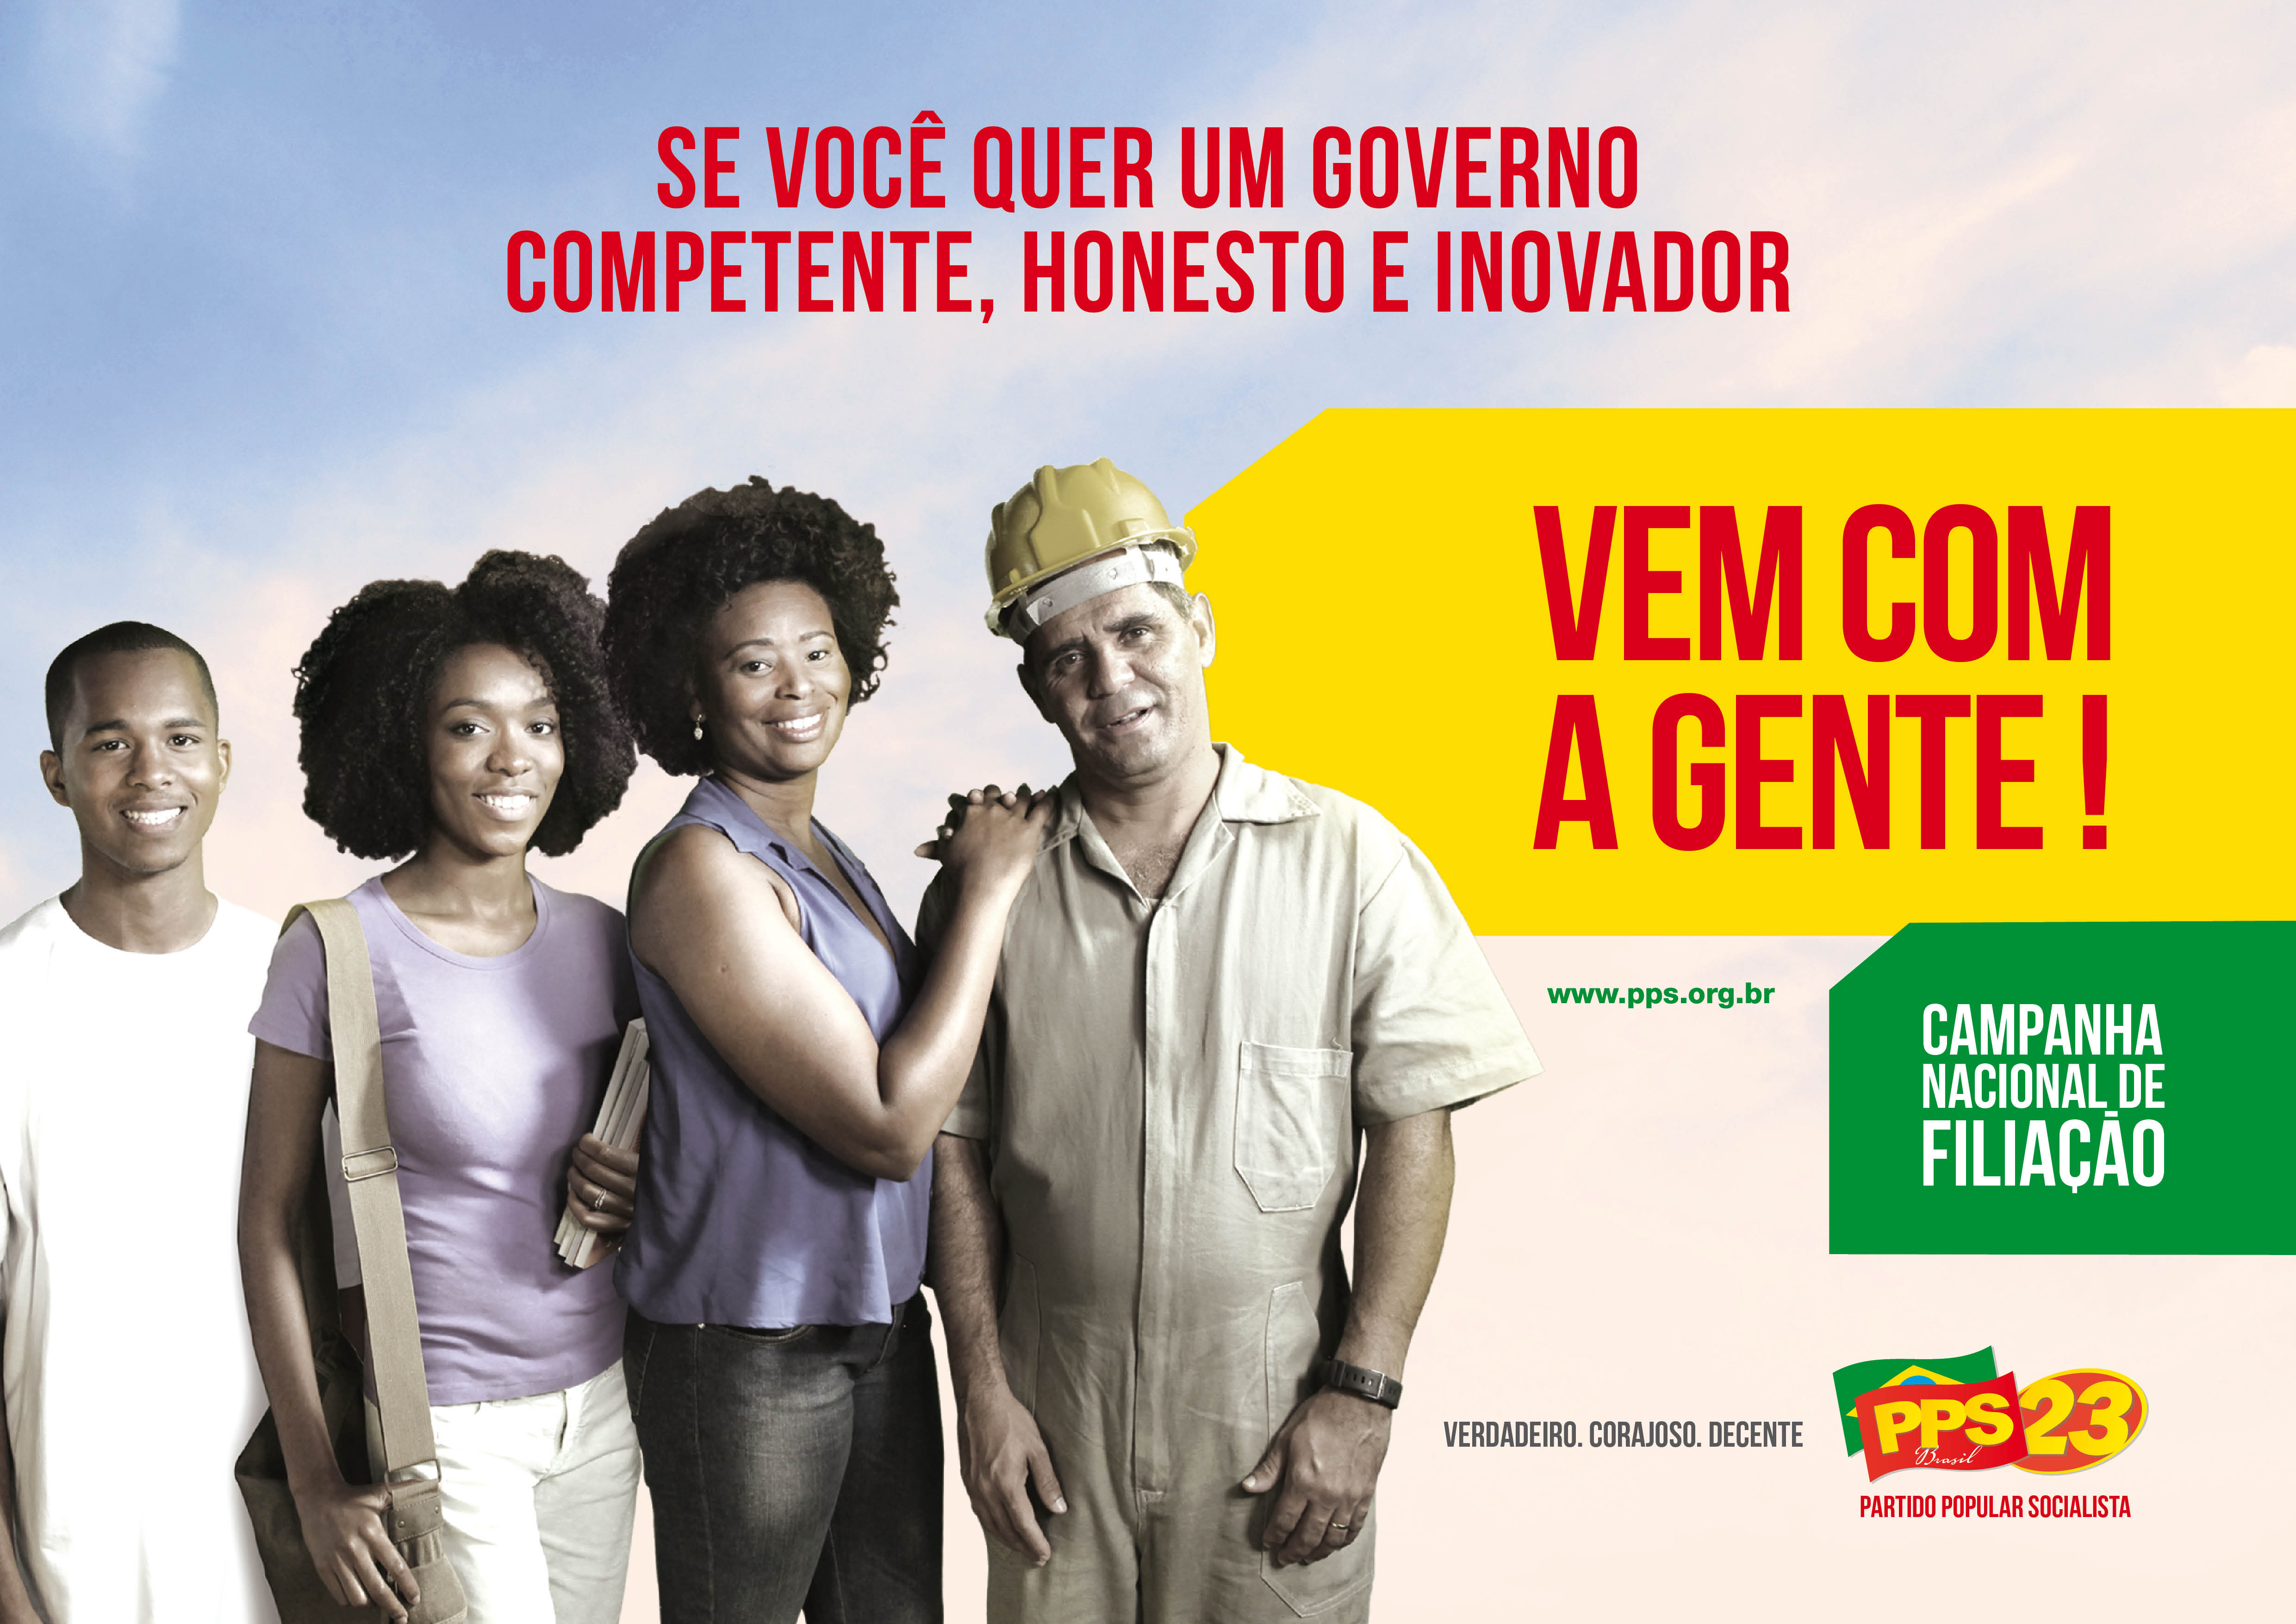 Partido Popular Socialista (PPS) - Brazil